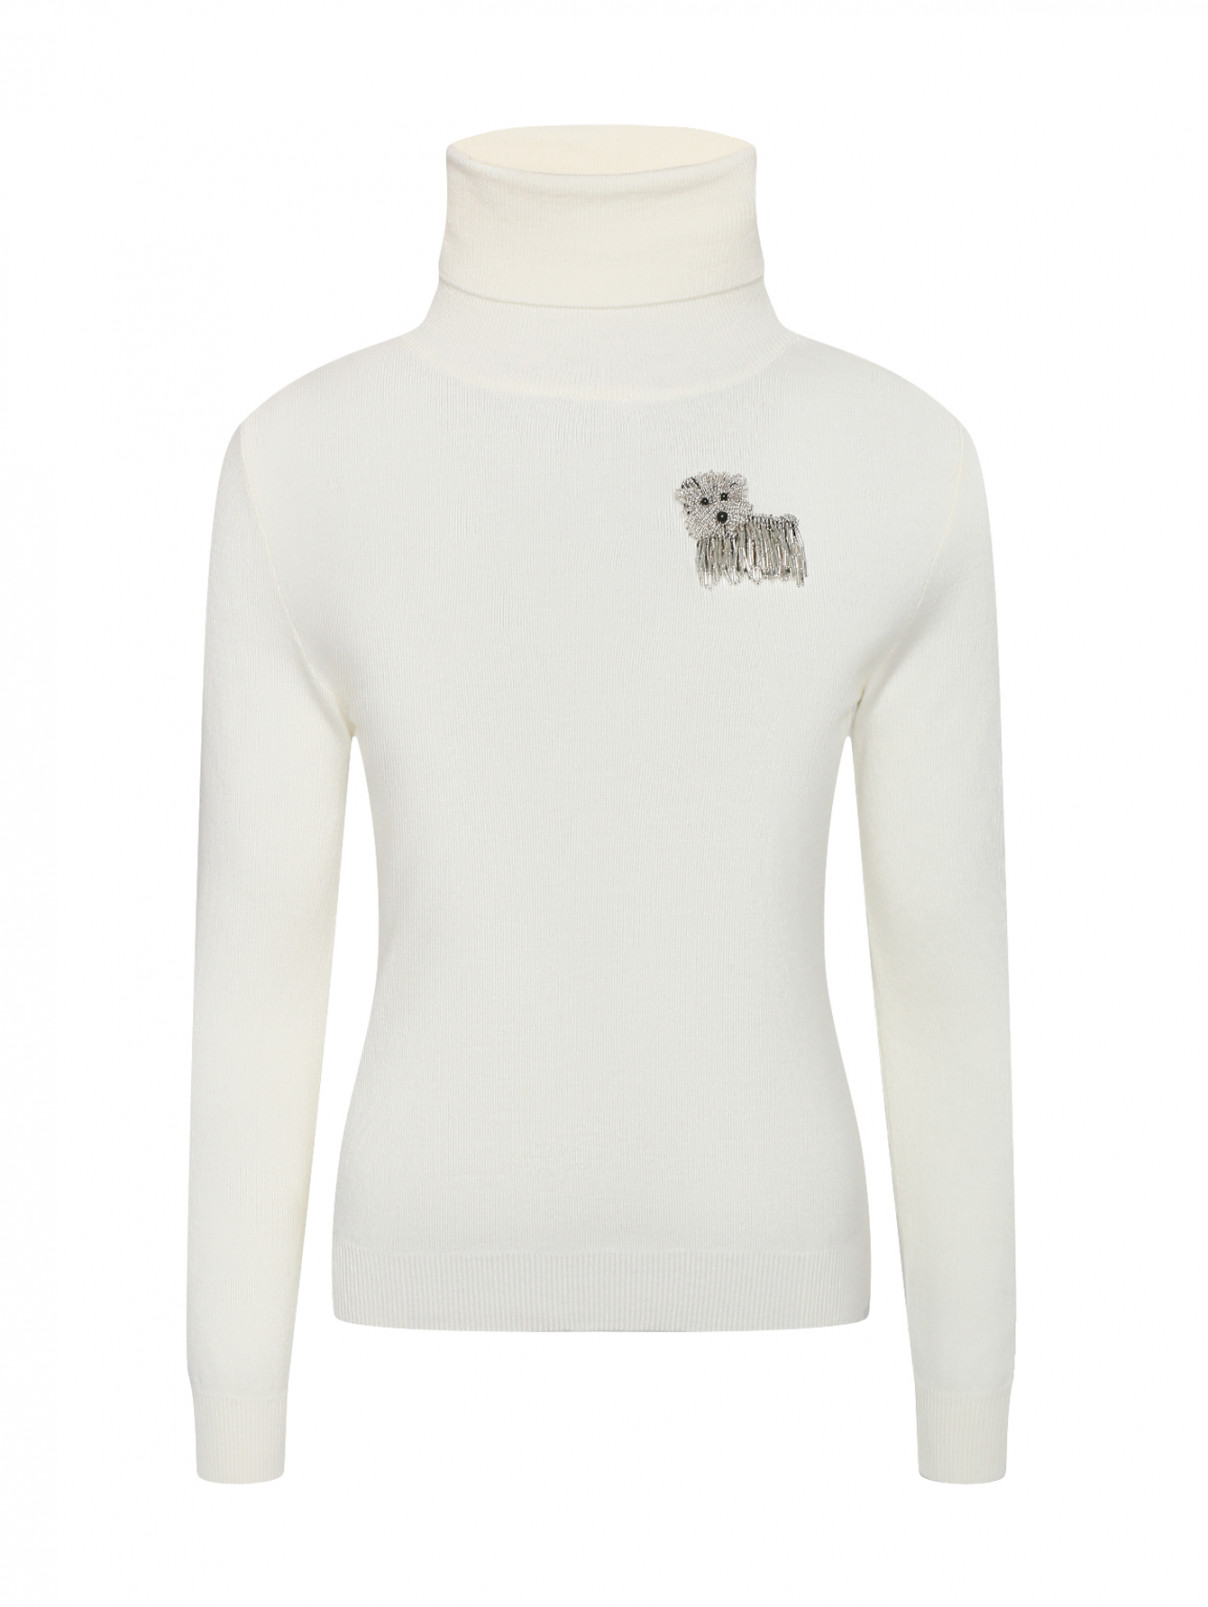 Водолазка из шерсти с брошкой Moschino Boutique  –  Общий вид  – Цвет:  Белый